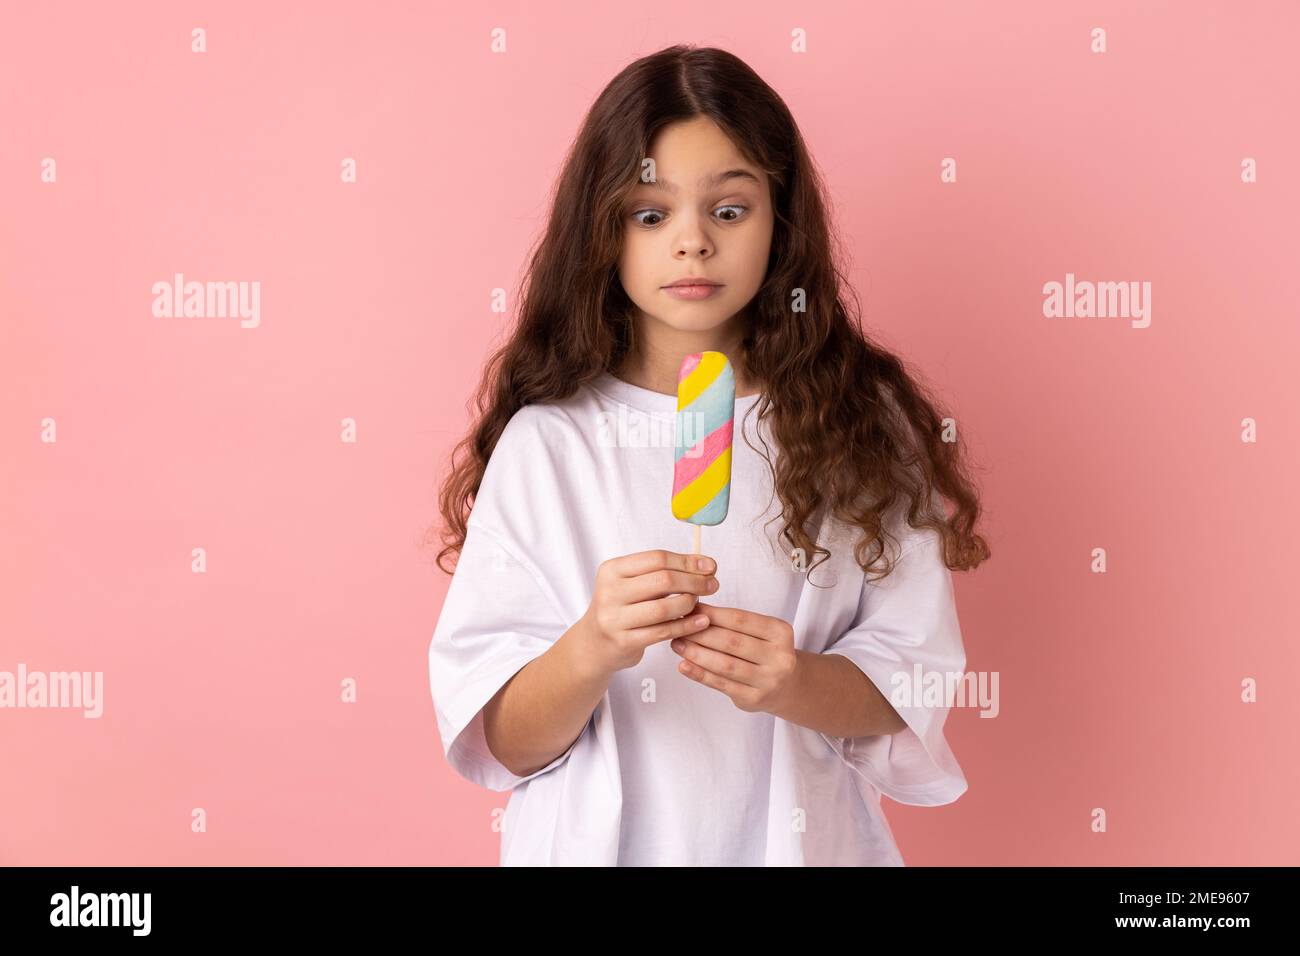 Portrait de la petite fille surprise choquée portant un T-shirt blanc tenant une délicieuse crème glacée, regarde le dessert avec une expression étonnante. Studio d'intérieur isolé sur fond rose. Banque D'Images